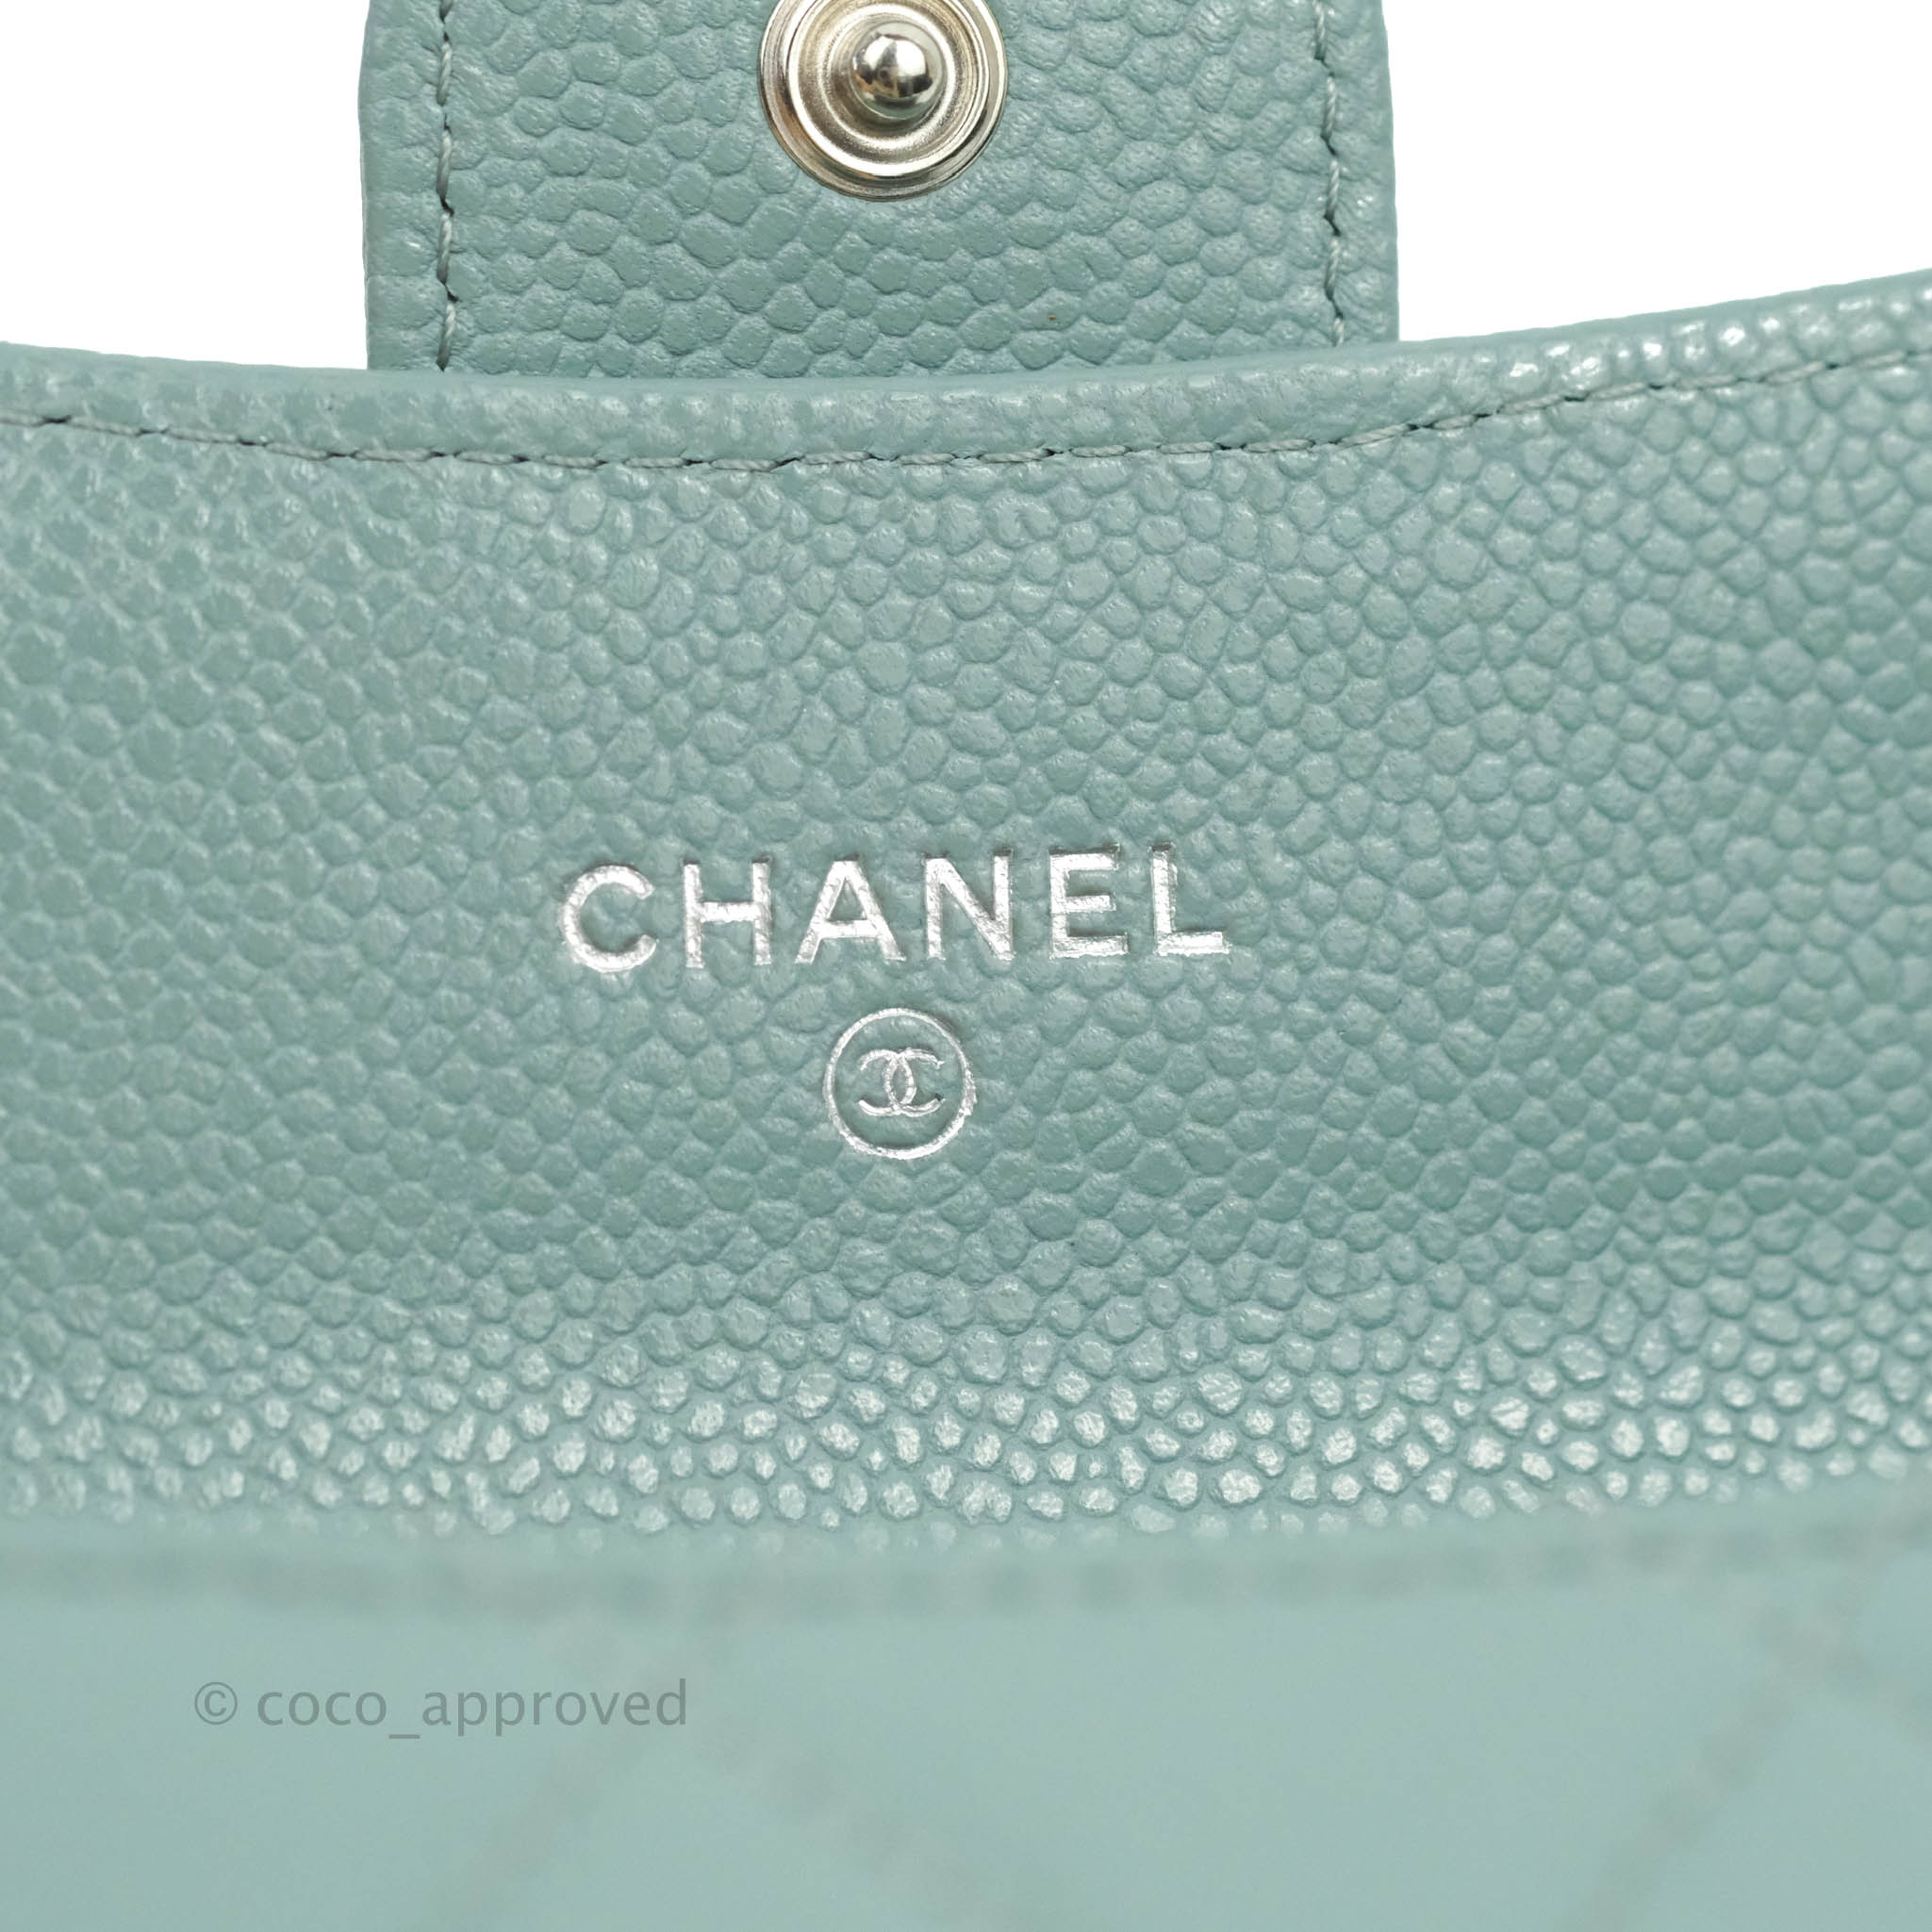 Chanel '12 'Timeless' Caviar CC Continental Wallet – The Little Bird